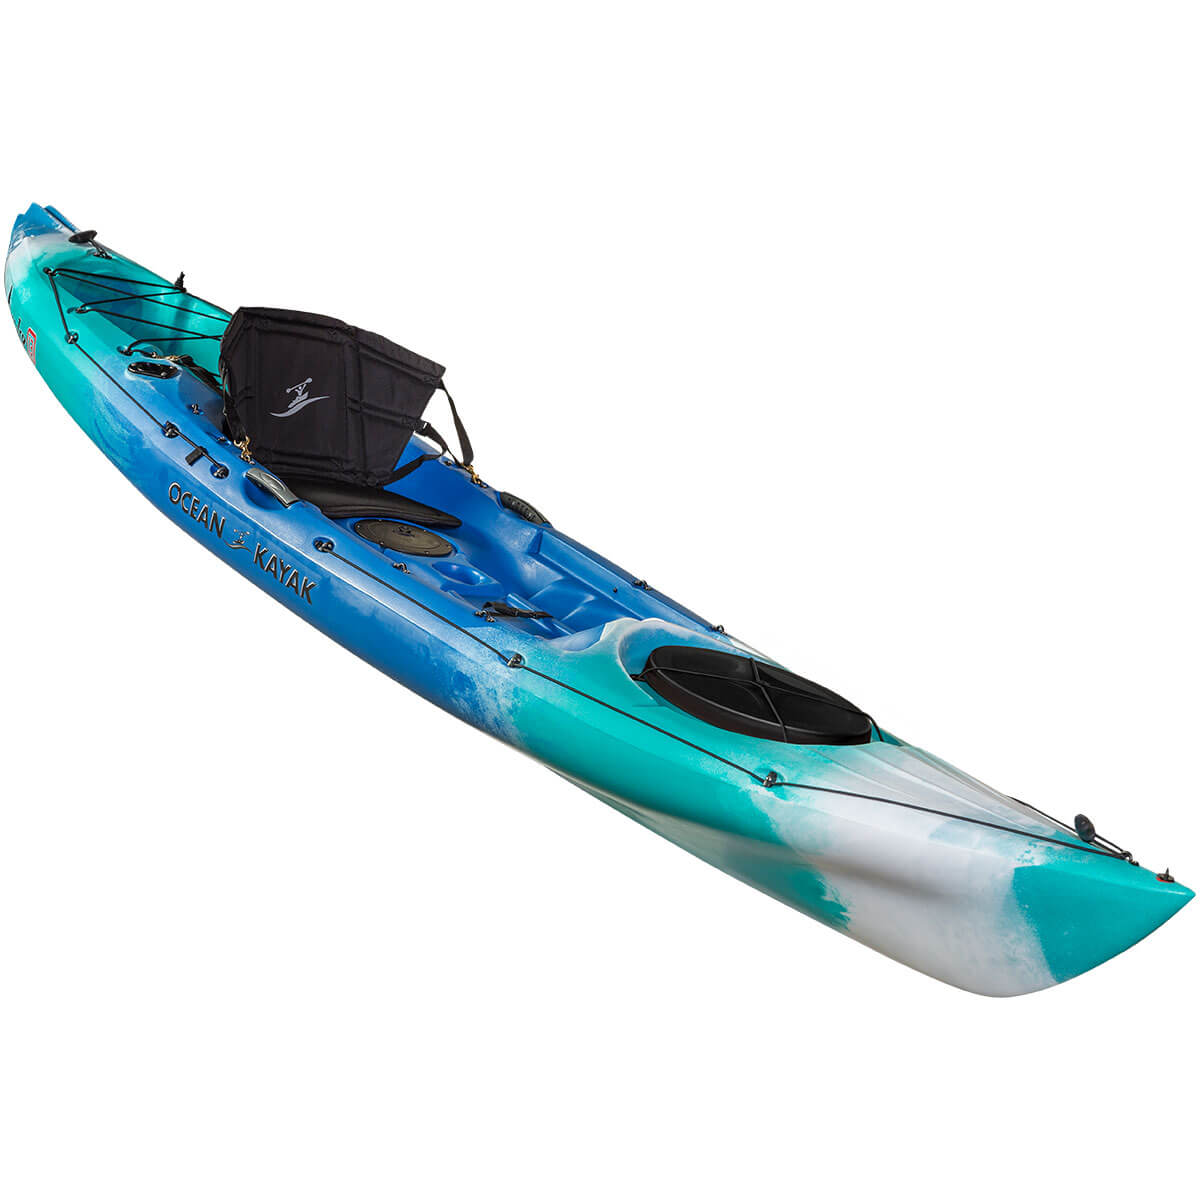 🛶 (2021) Ocean Kayak Prowler 13 Angler // Review